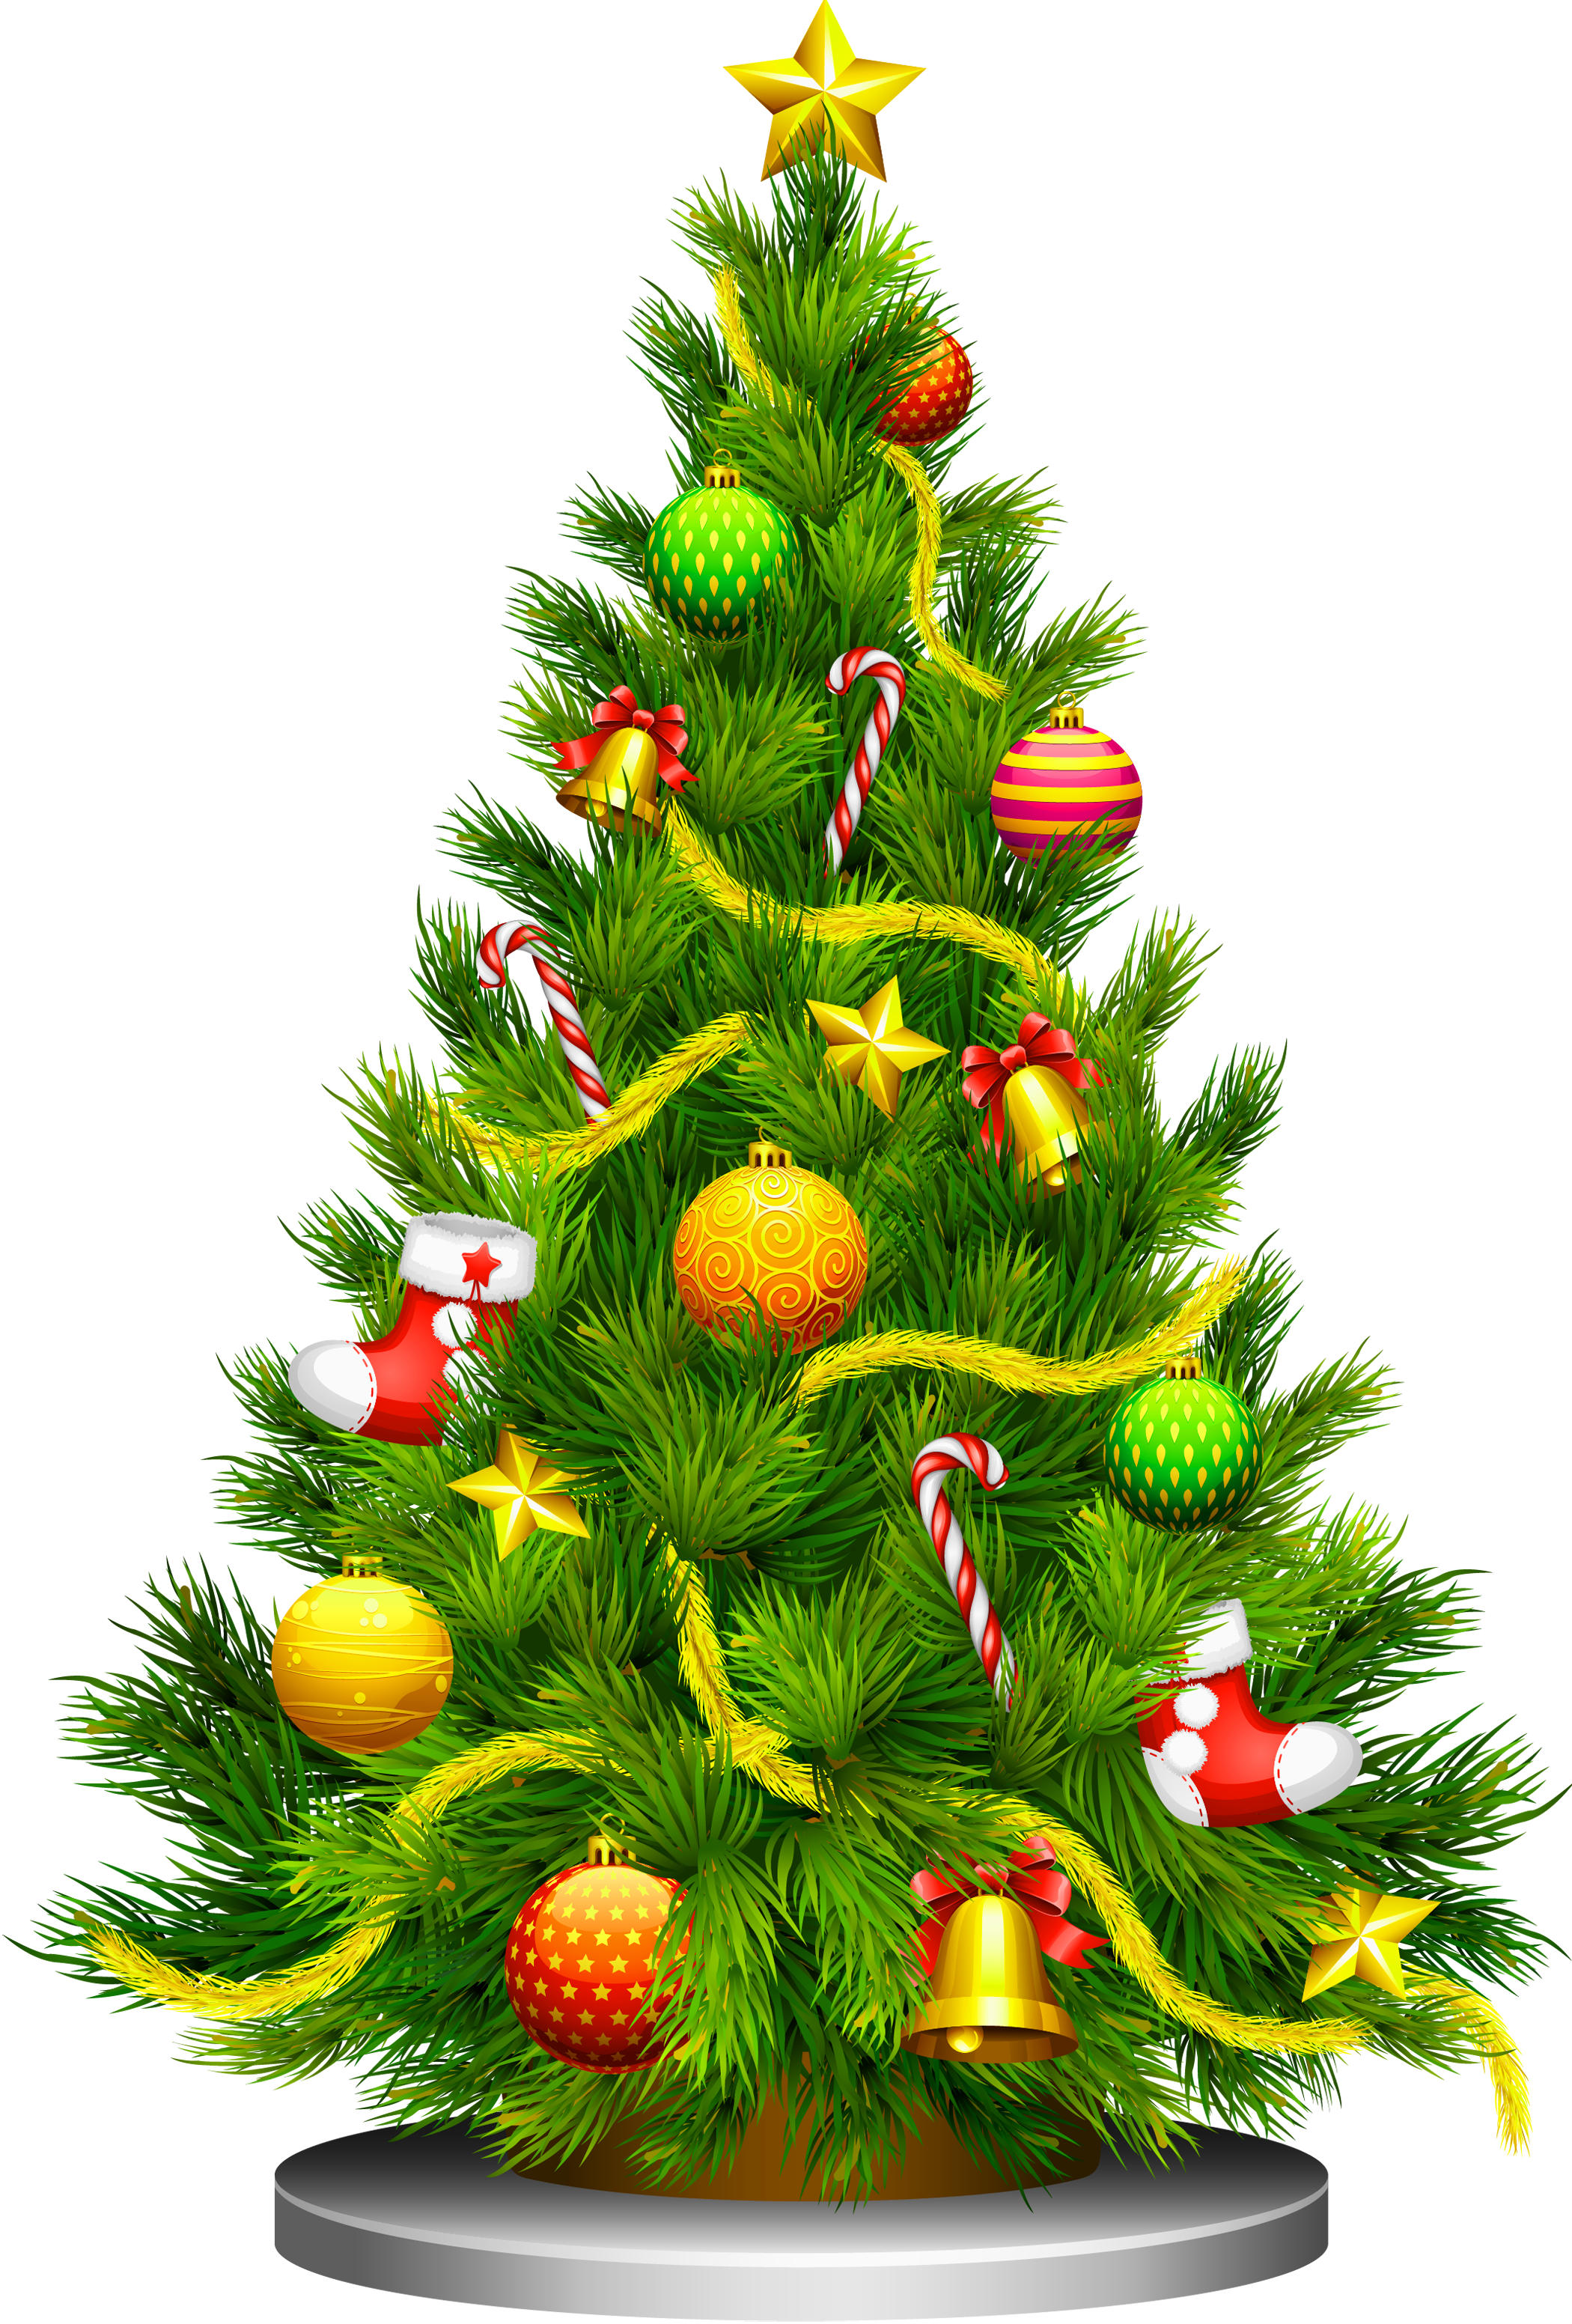 Pic Animated Tree Christmas Free HQ Image PNG Image